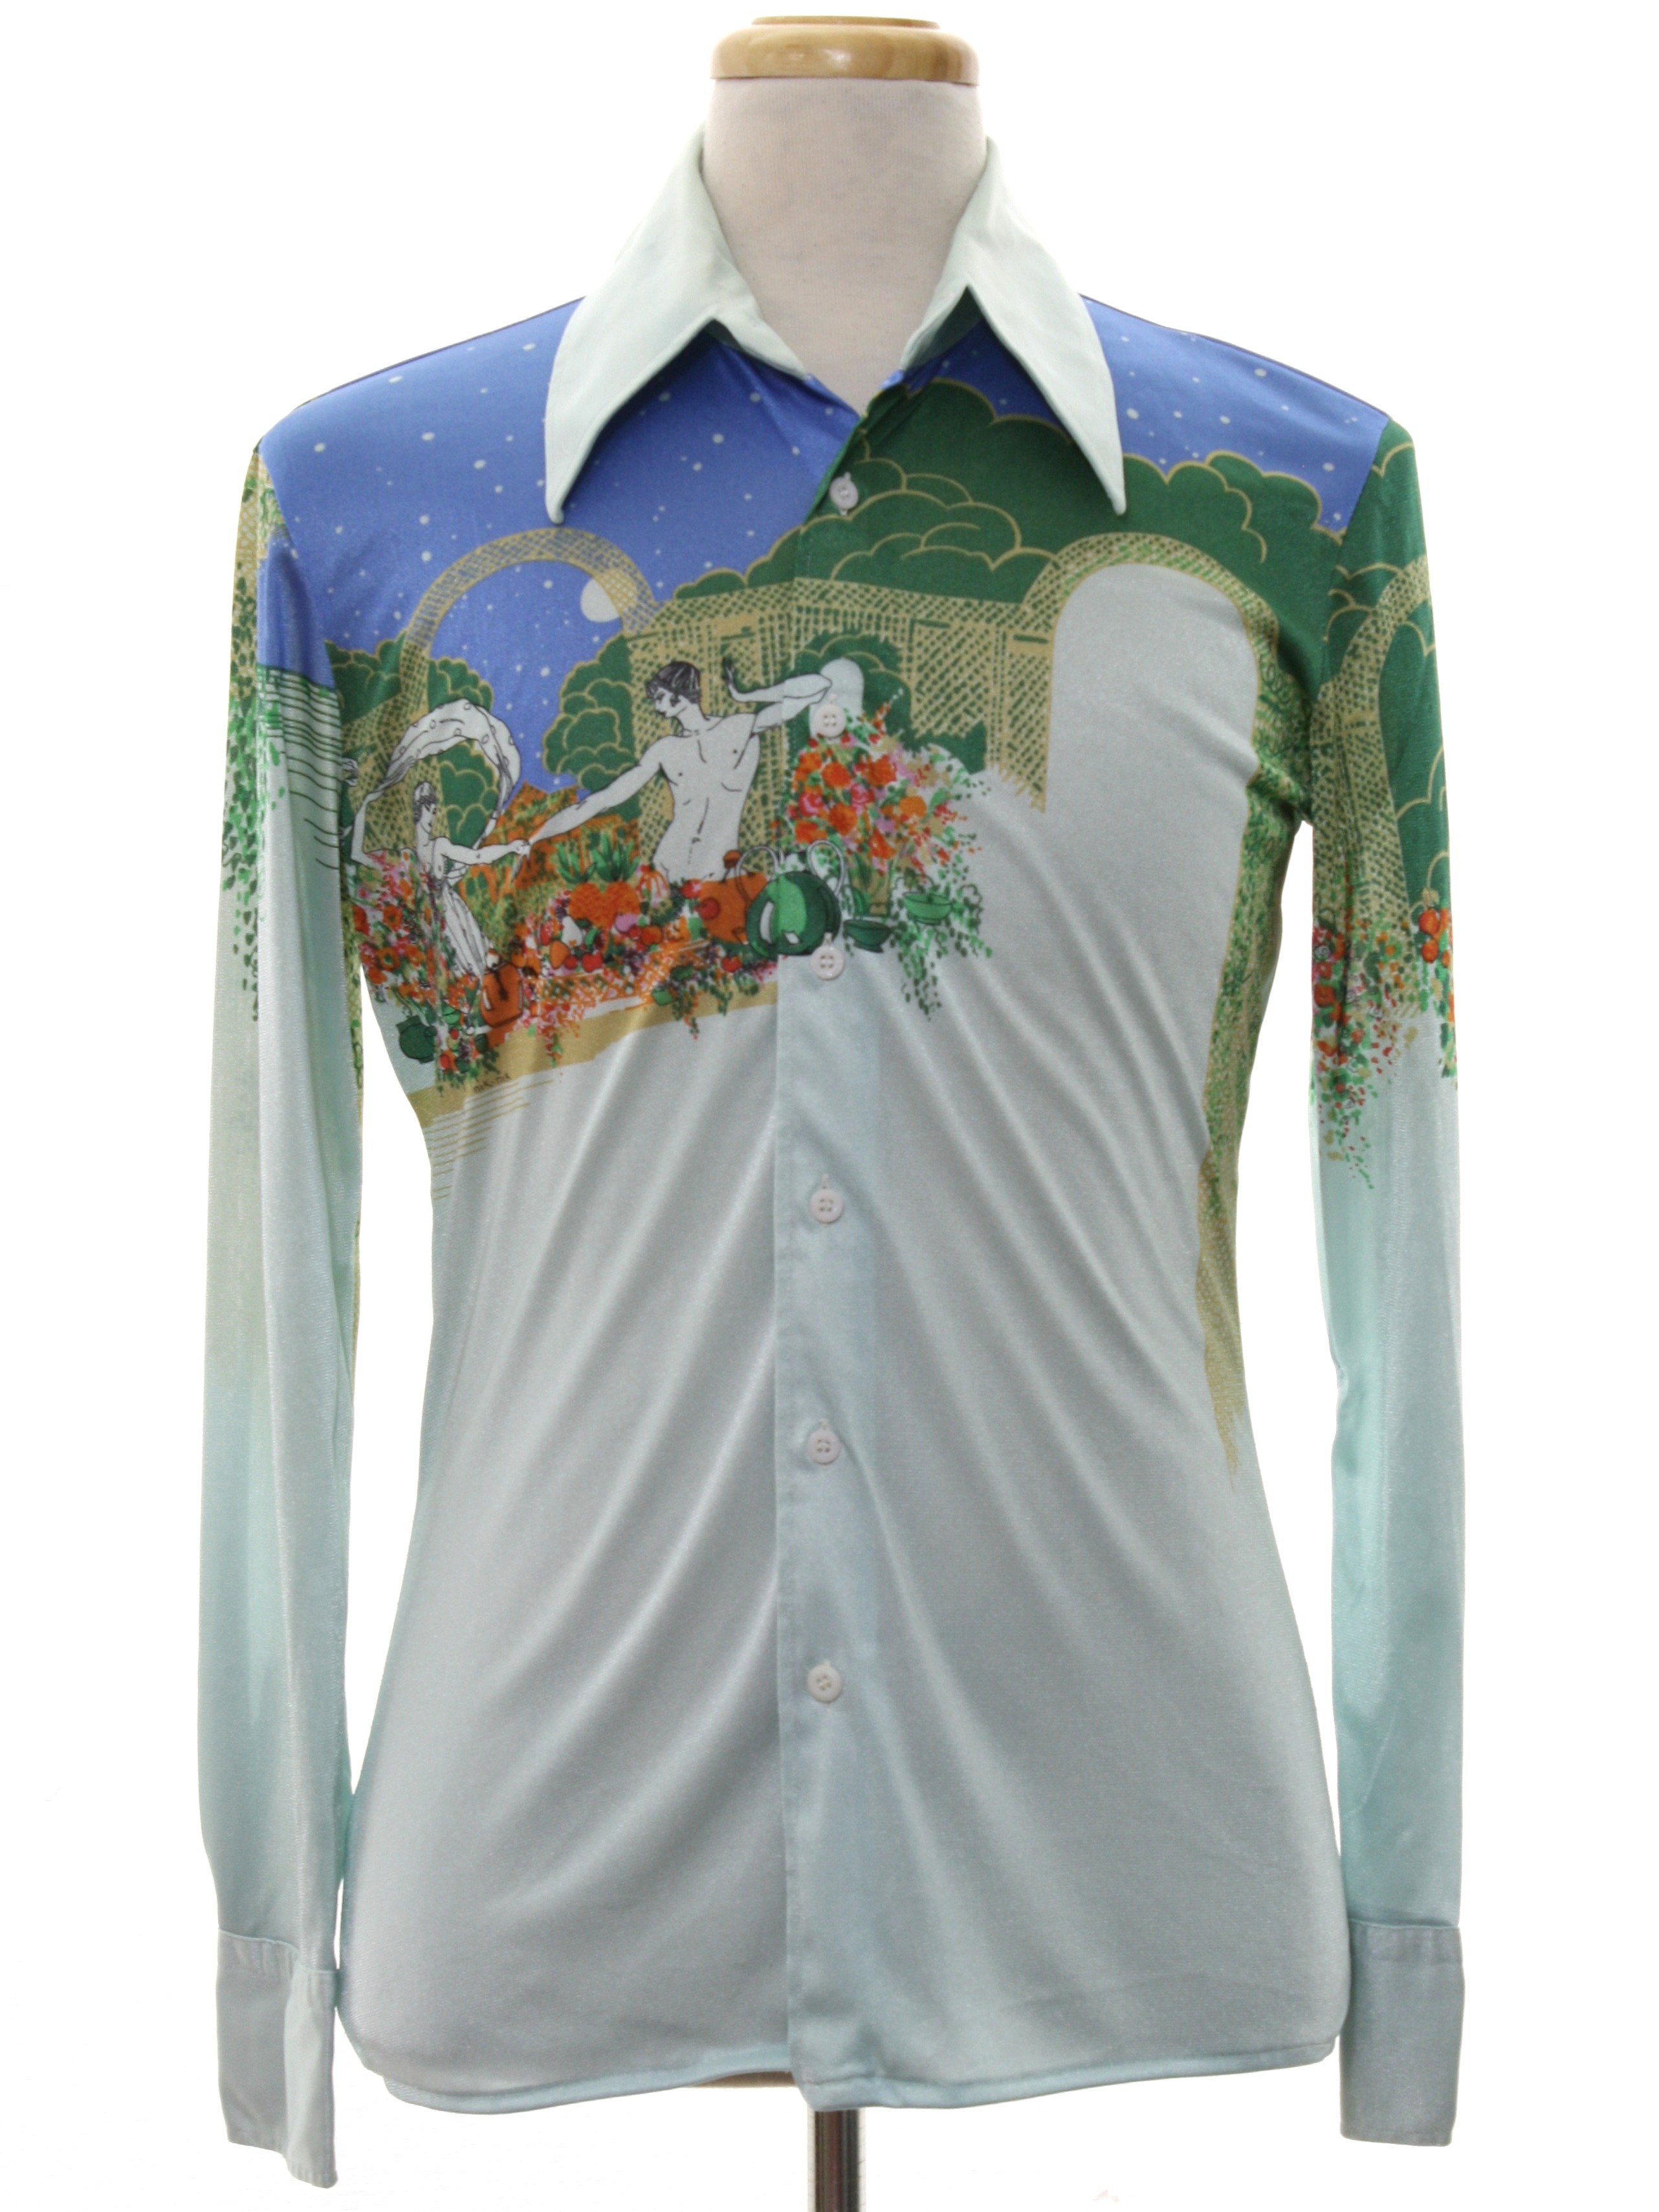 Nik Nik 1970s Vintage Print Disco Shirt: 70s -Nik Nik- Mens shiny